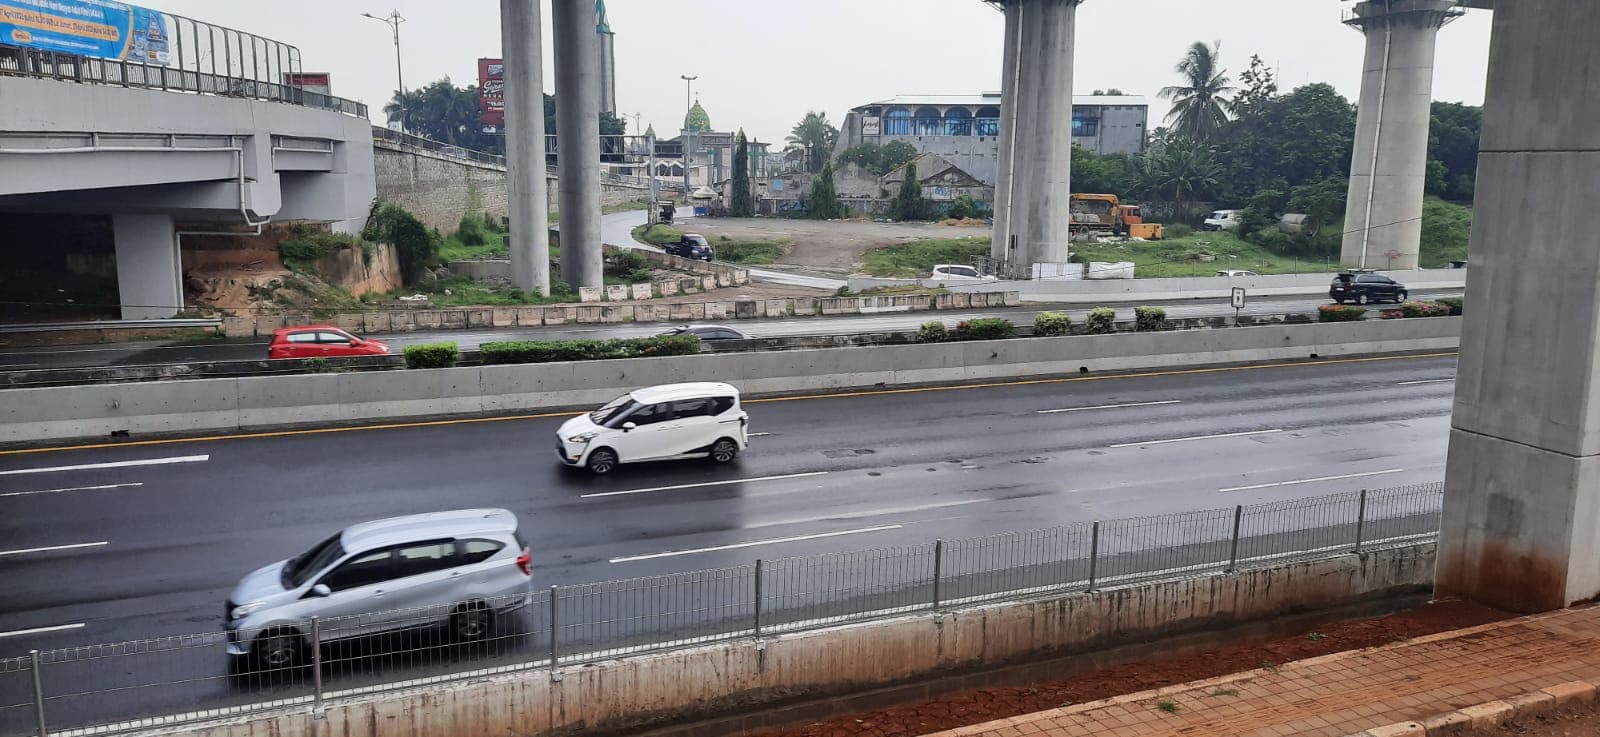 Mengemudi Mobil di Musim Hujan.jpeg